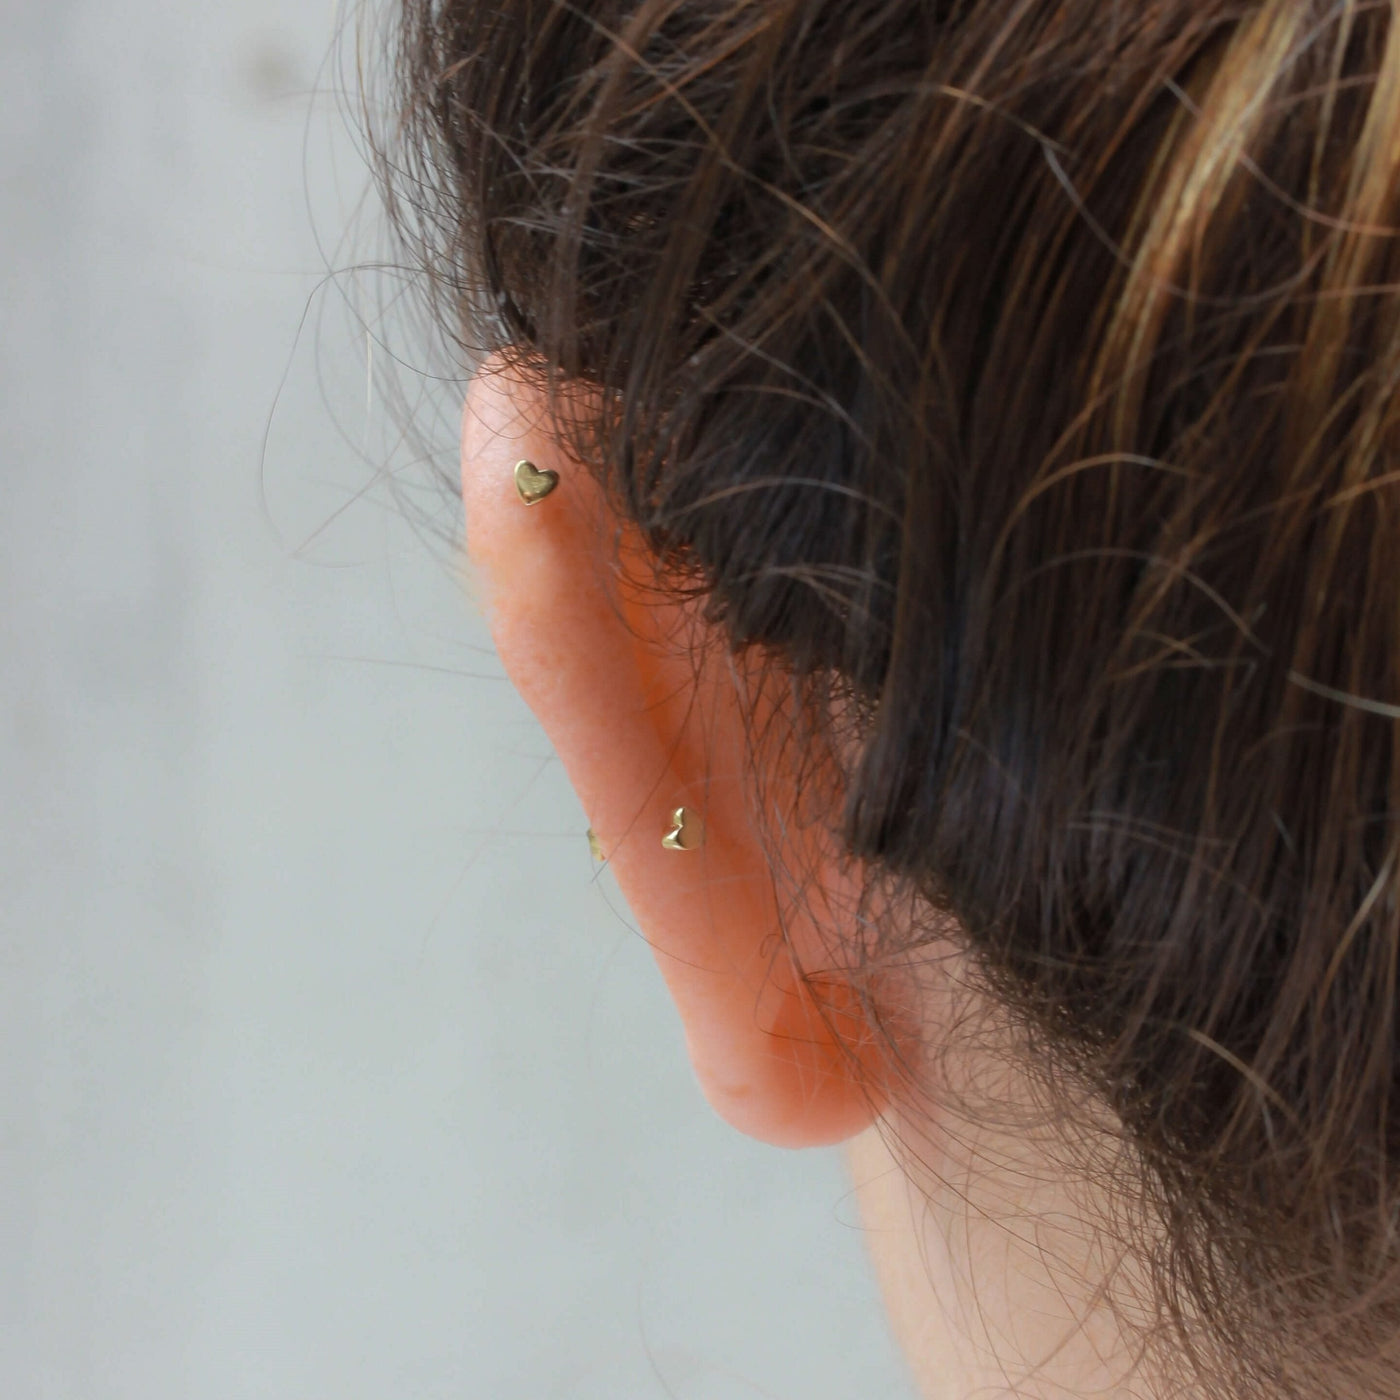 Blue Lia Piercing Earring 14K Gold Gemstones Earrings 